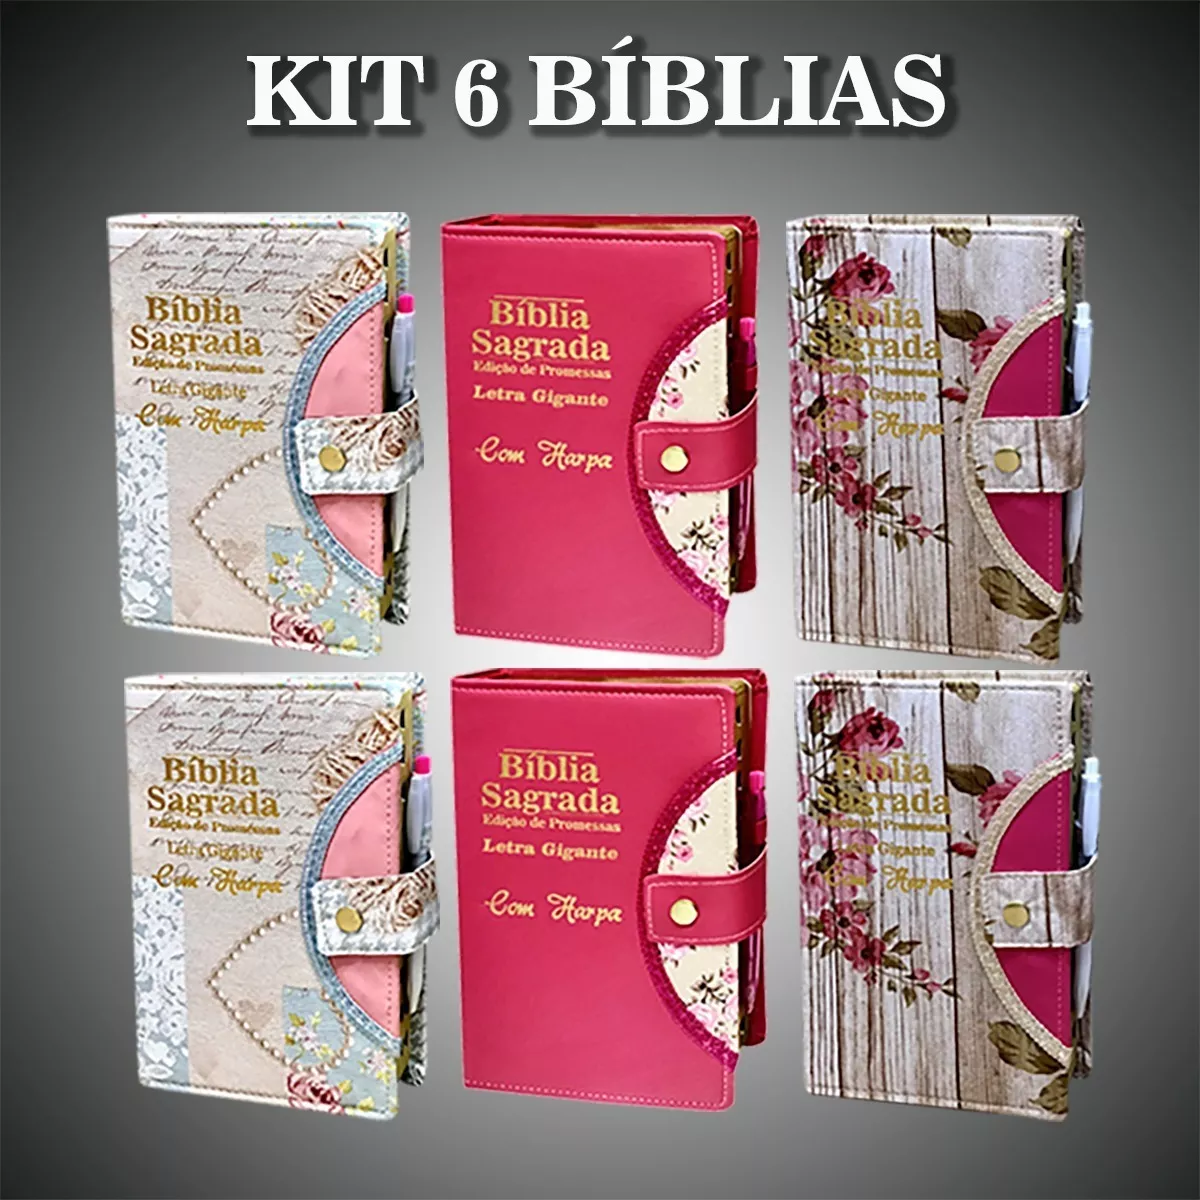 Kit 6 Bíblia Letra Gigante - Botão E Caneta C/ Harpa - 14x21